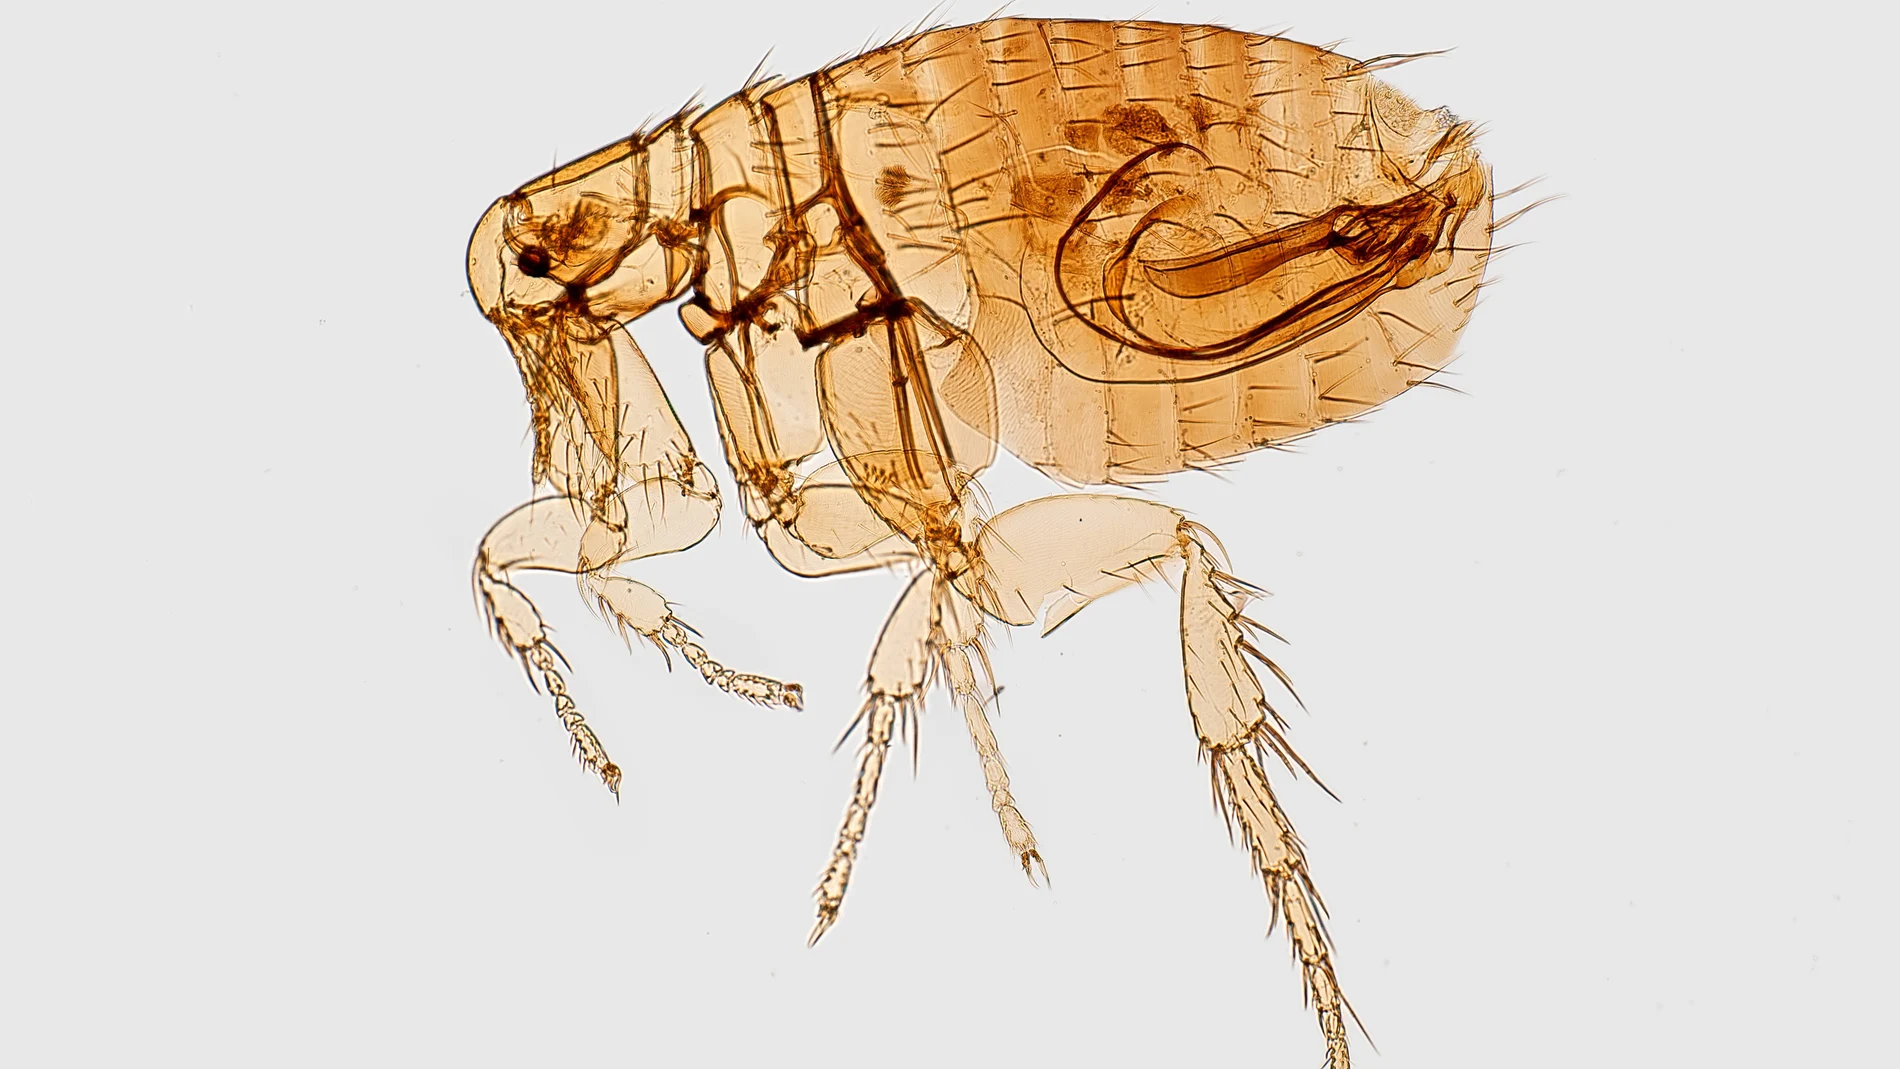 Dispersión Flojamente Preocupado Cómo eliminar las pulgas de casa: métodos efectivos, naturales y rápidos